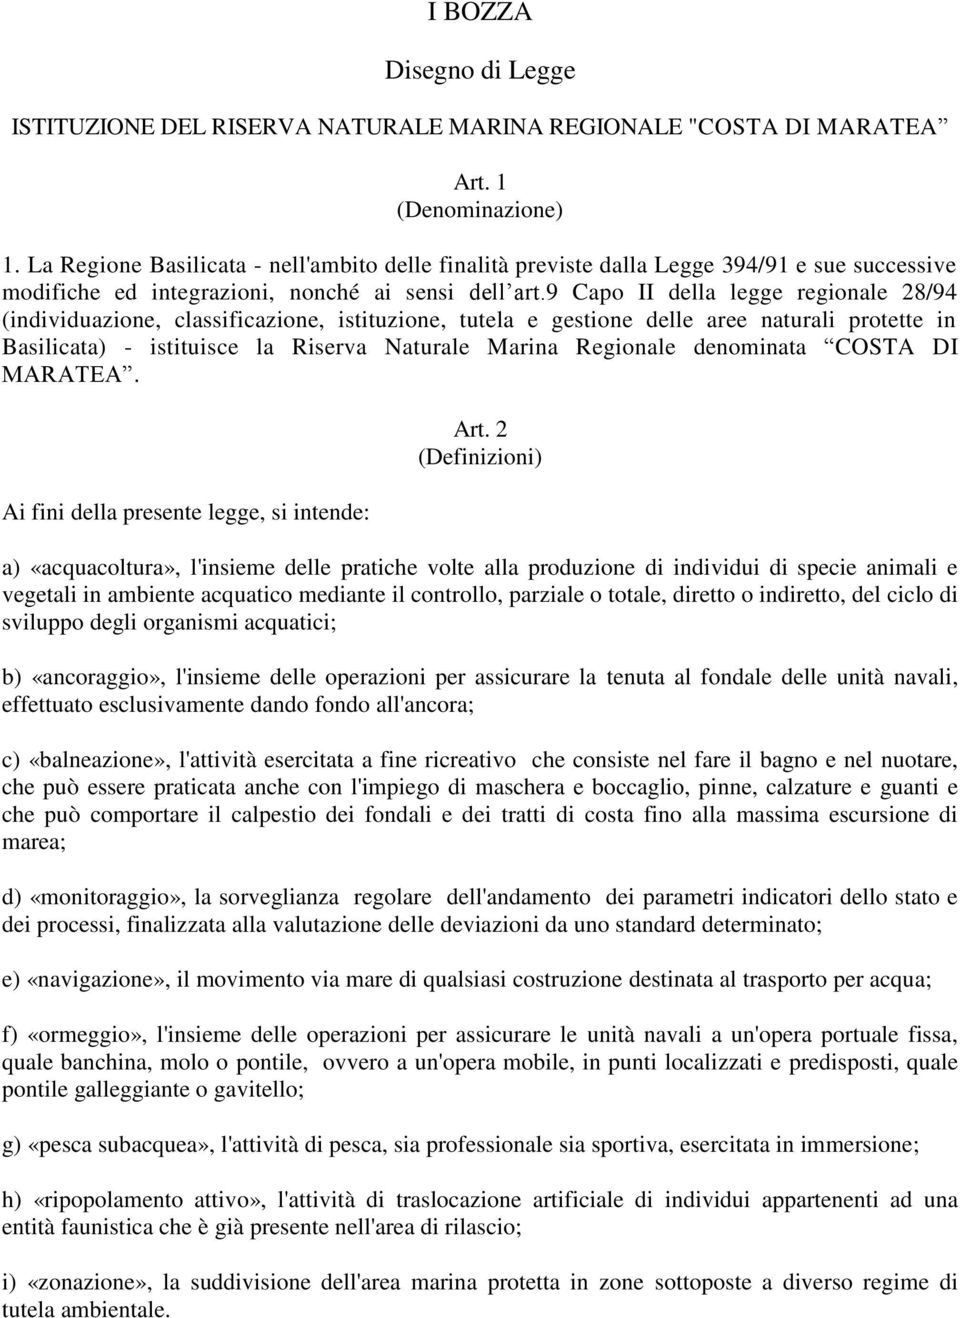 9 Capo II della legge regionale 28/94 (individuazione, classificazione, istituzione, tutela e gestione delle aree naturali protette in Basilicata) - istituisce la Riserva Naturale Marina Regionale